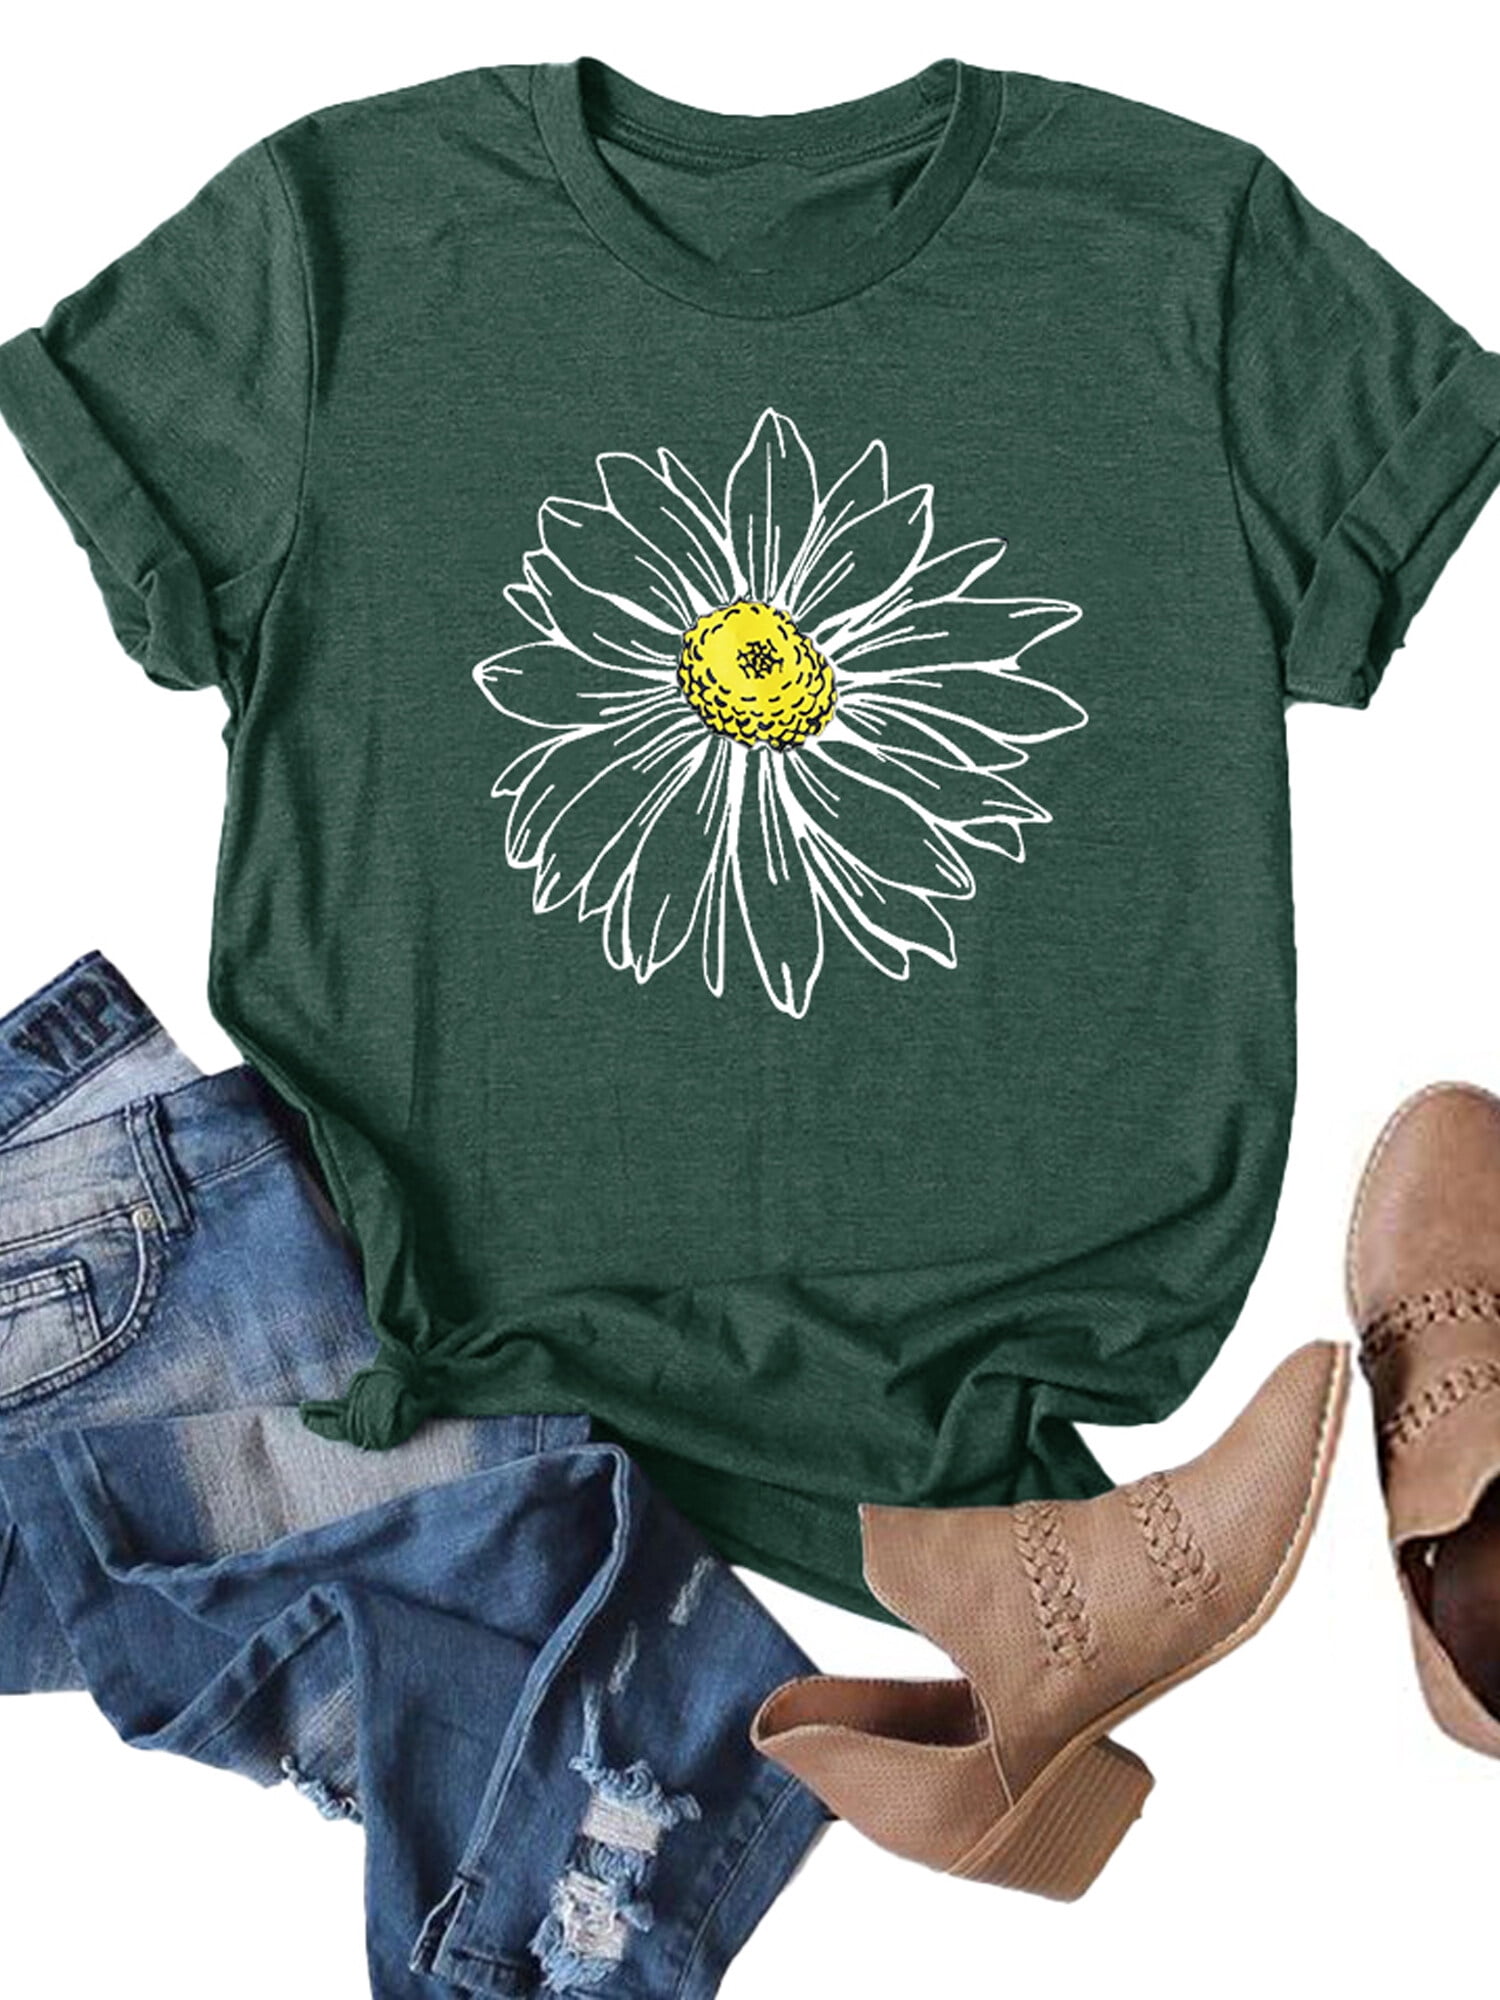 Anbech Sunflower Shirts for Women Short Sleeve Tops Teen Junior Girls ...